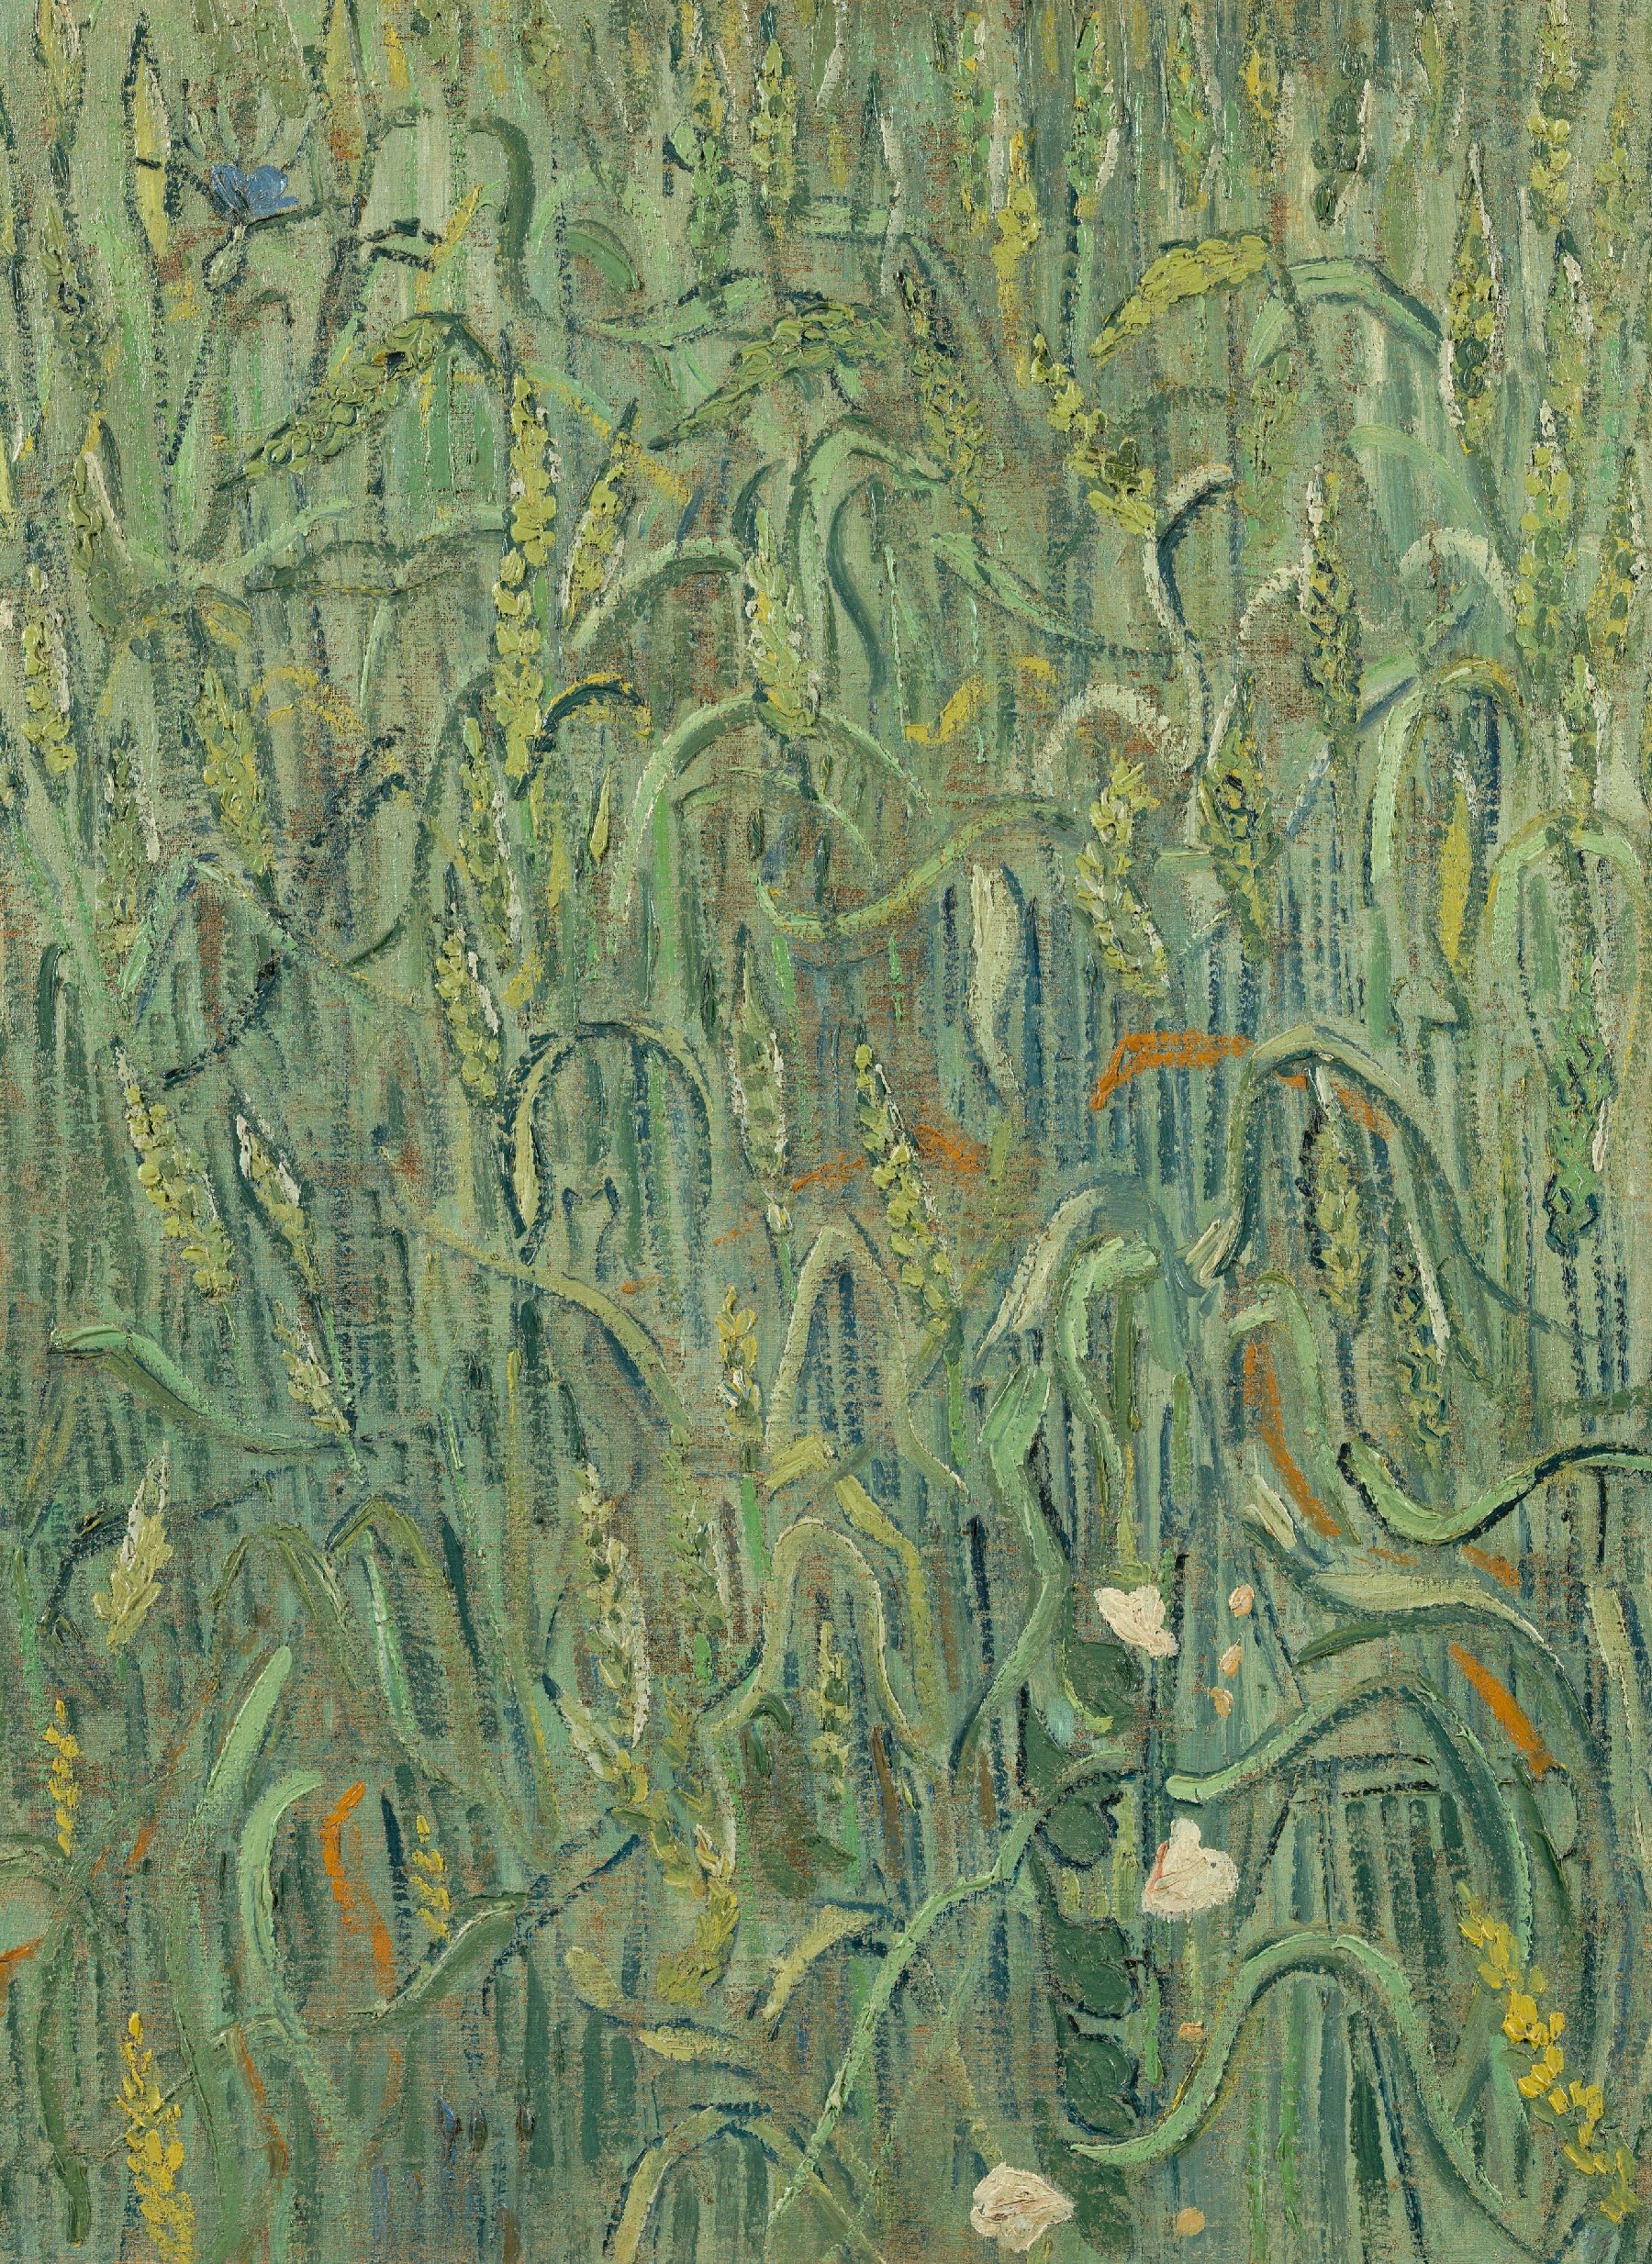 Korenaren Vincent van Gogh (1853 - 1890), Auvers-sur-Oise, juni 1890